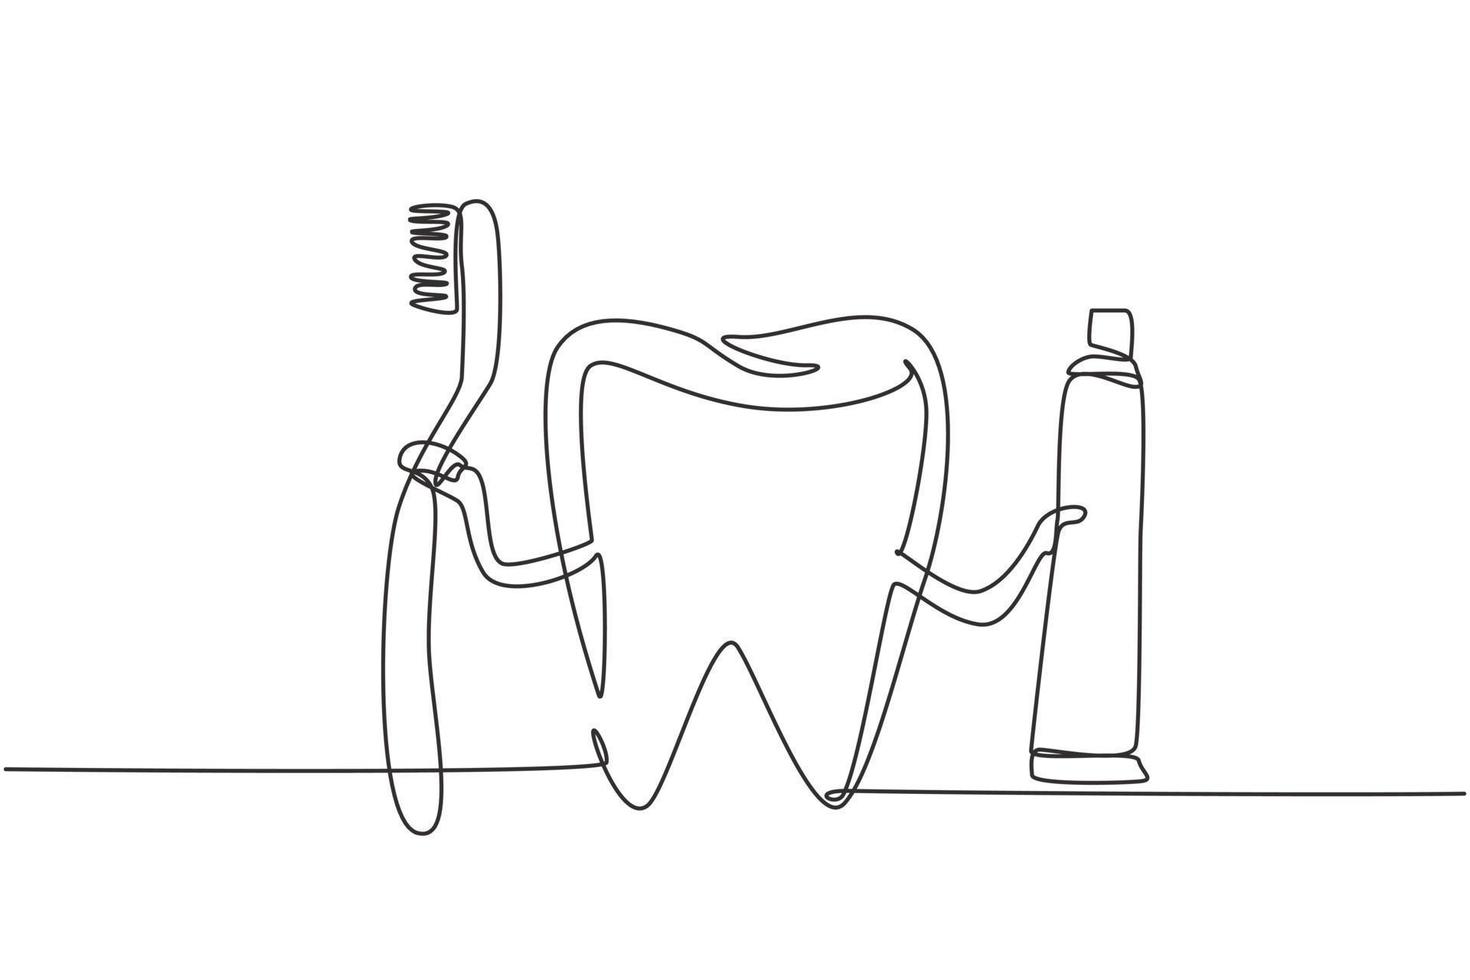 dessin continu d'une dent géante tenant une brosse à dents dans une main et du dentifrice dans l'autre. symbole ou logo clinique dentaire, centre de soins bucco-dentaires. illustration graphique de vecteur de conception de dessin à une seule ligne